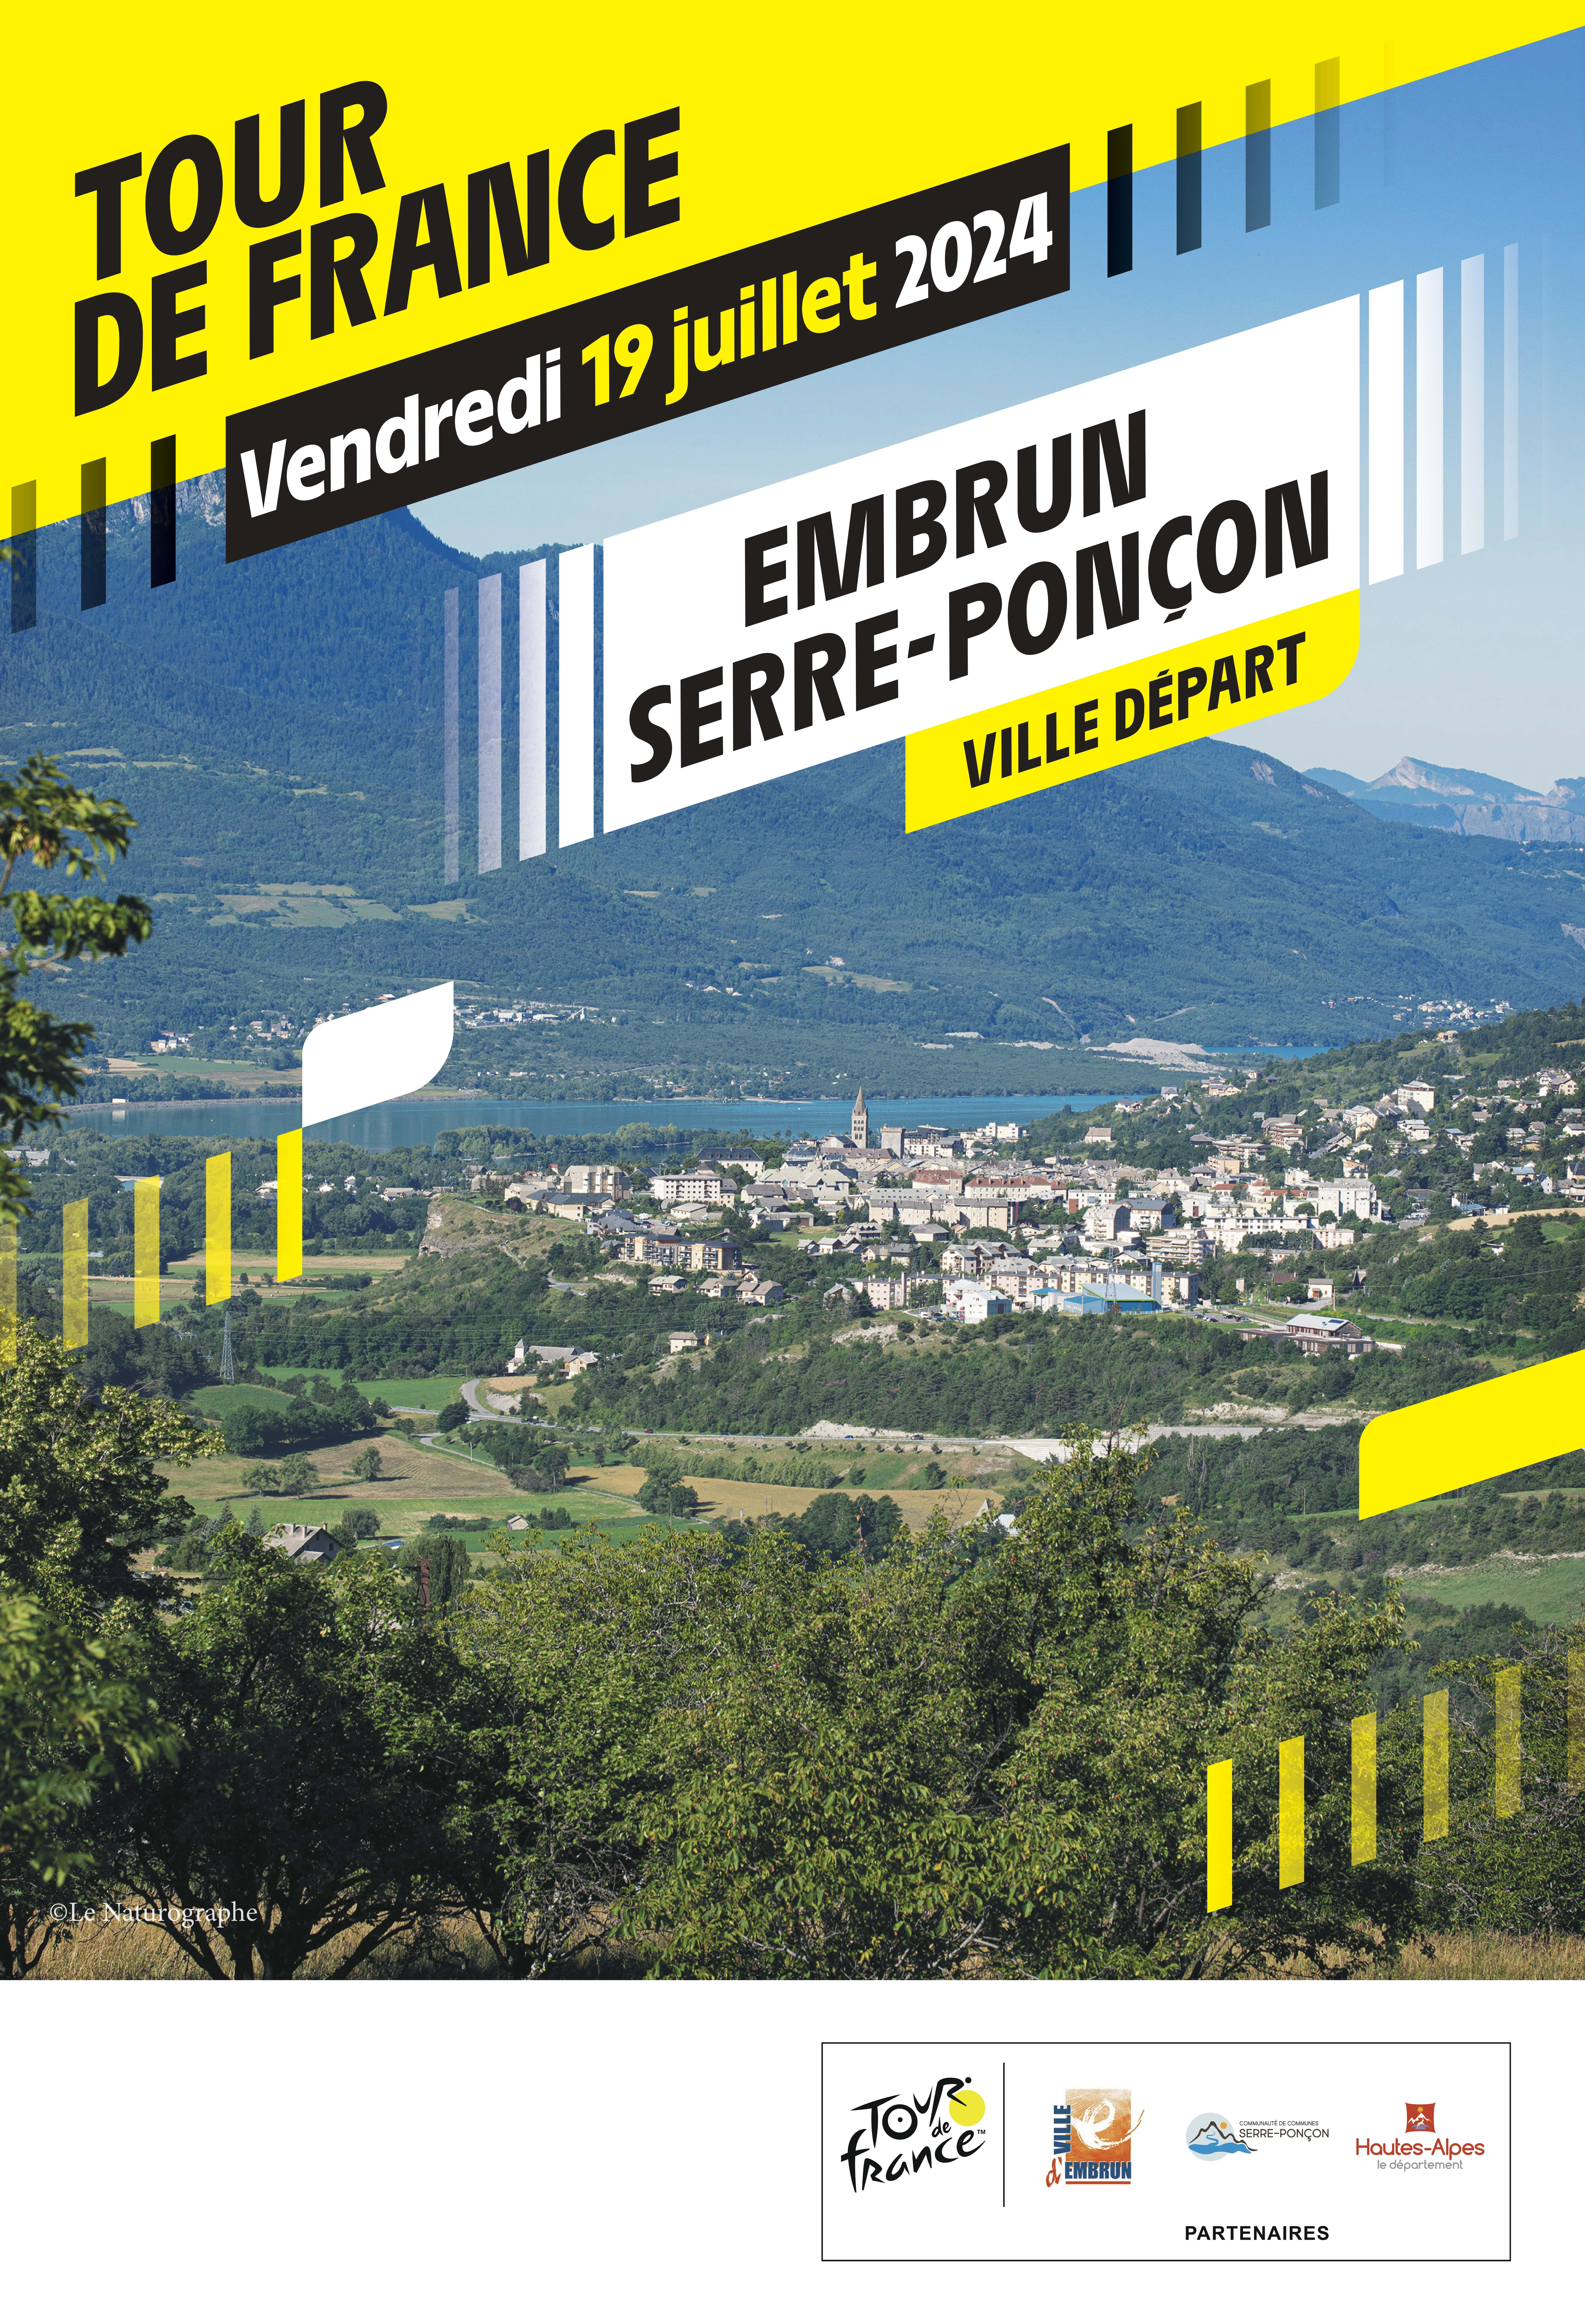 Tour de France Embrun Serre-Ponçon ville départ